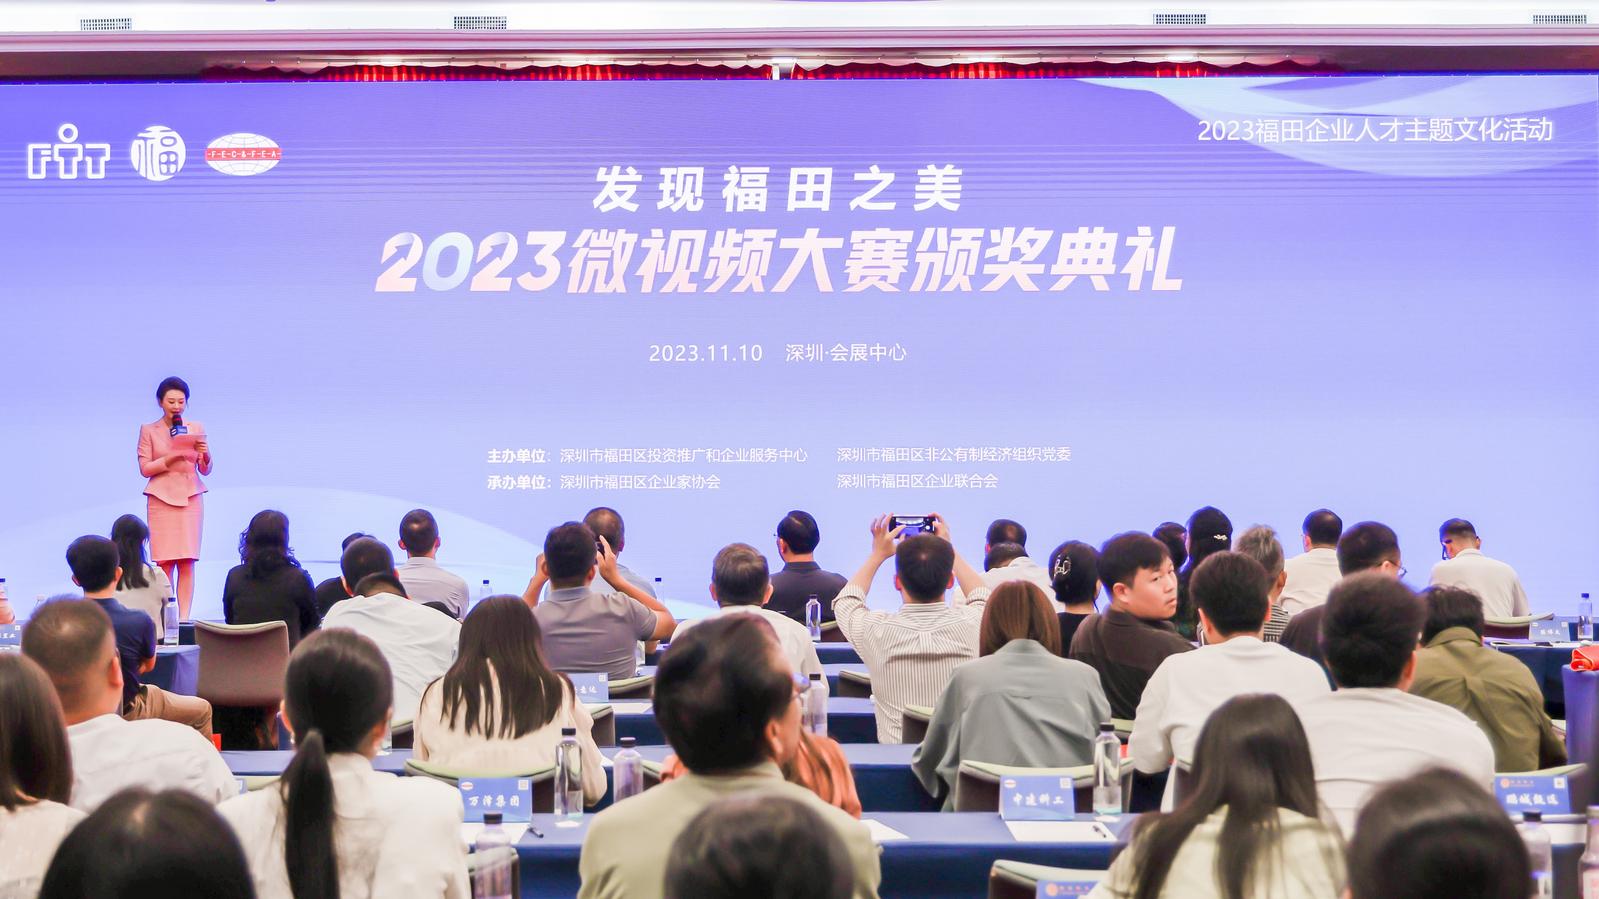 2023福田企业人才主题文化活动微视频大赛颁奖典礼成功举行